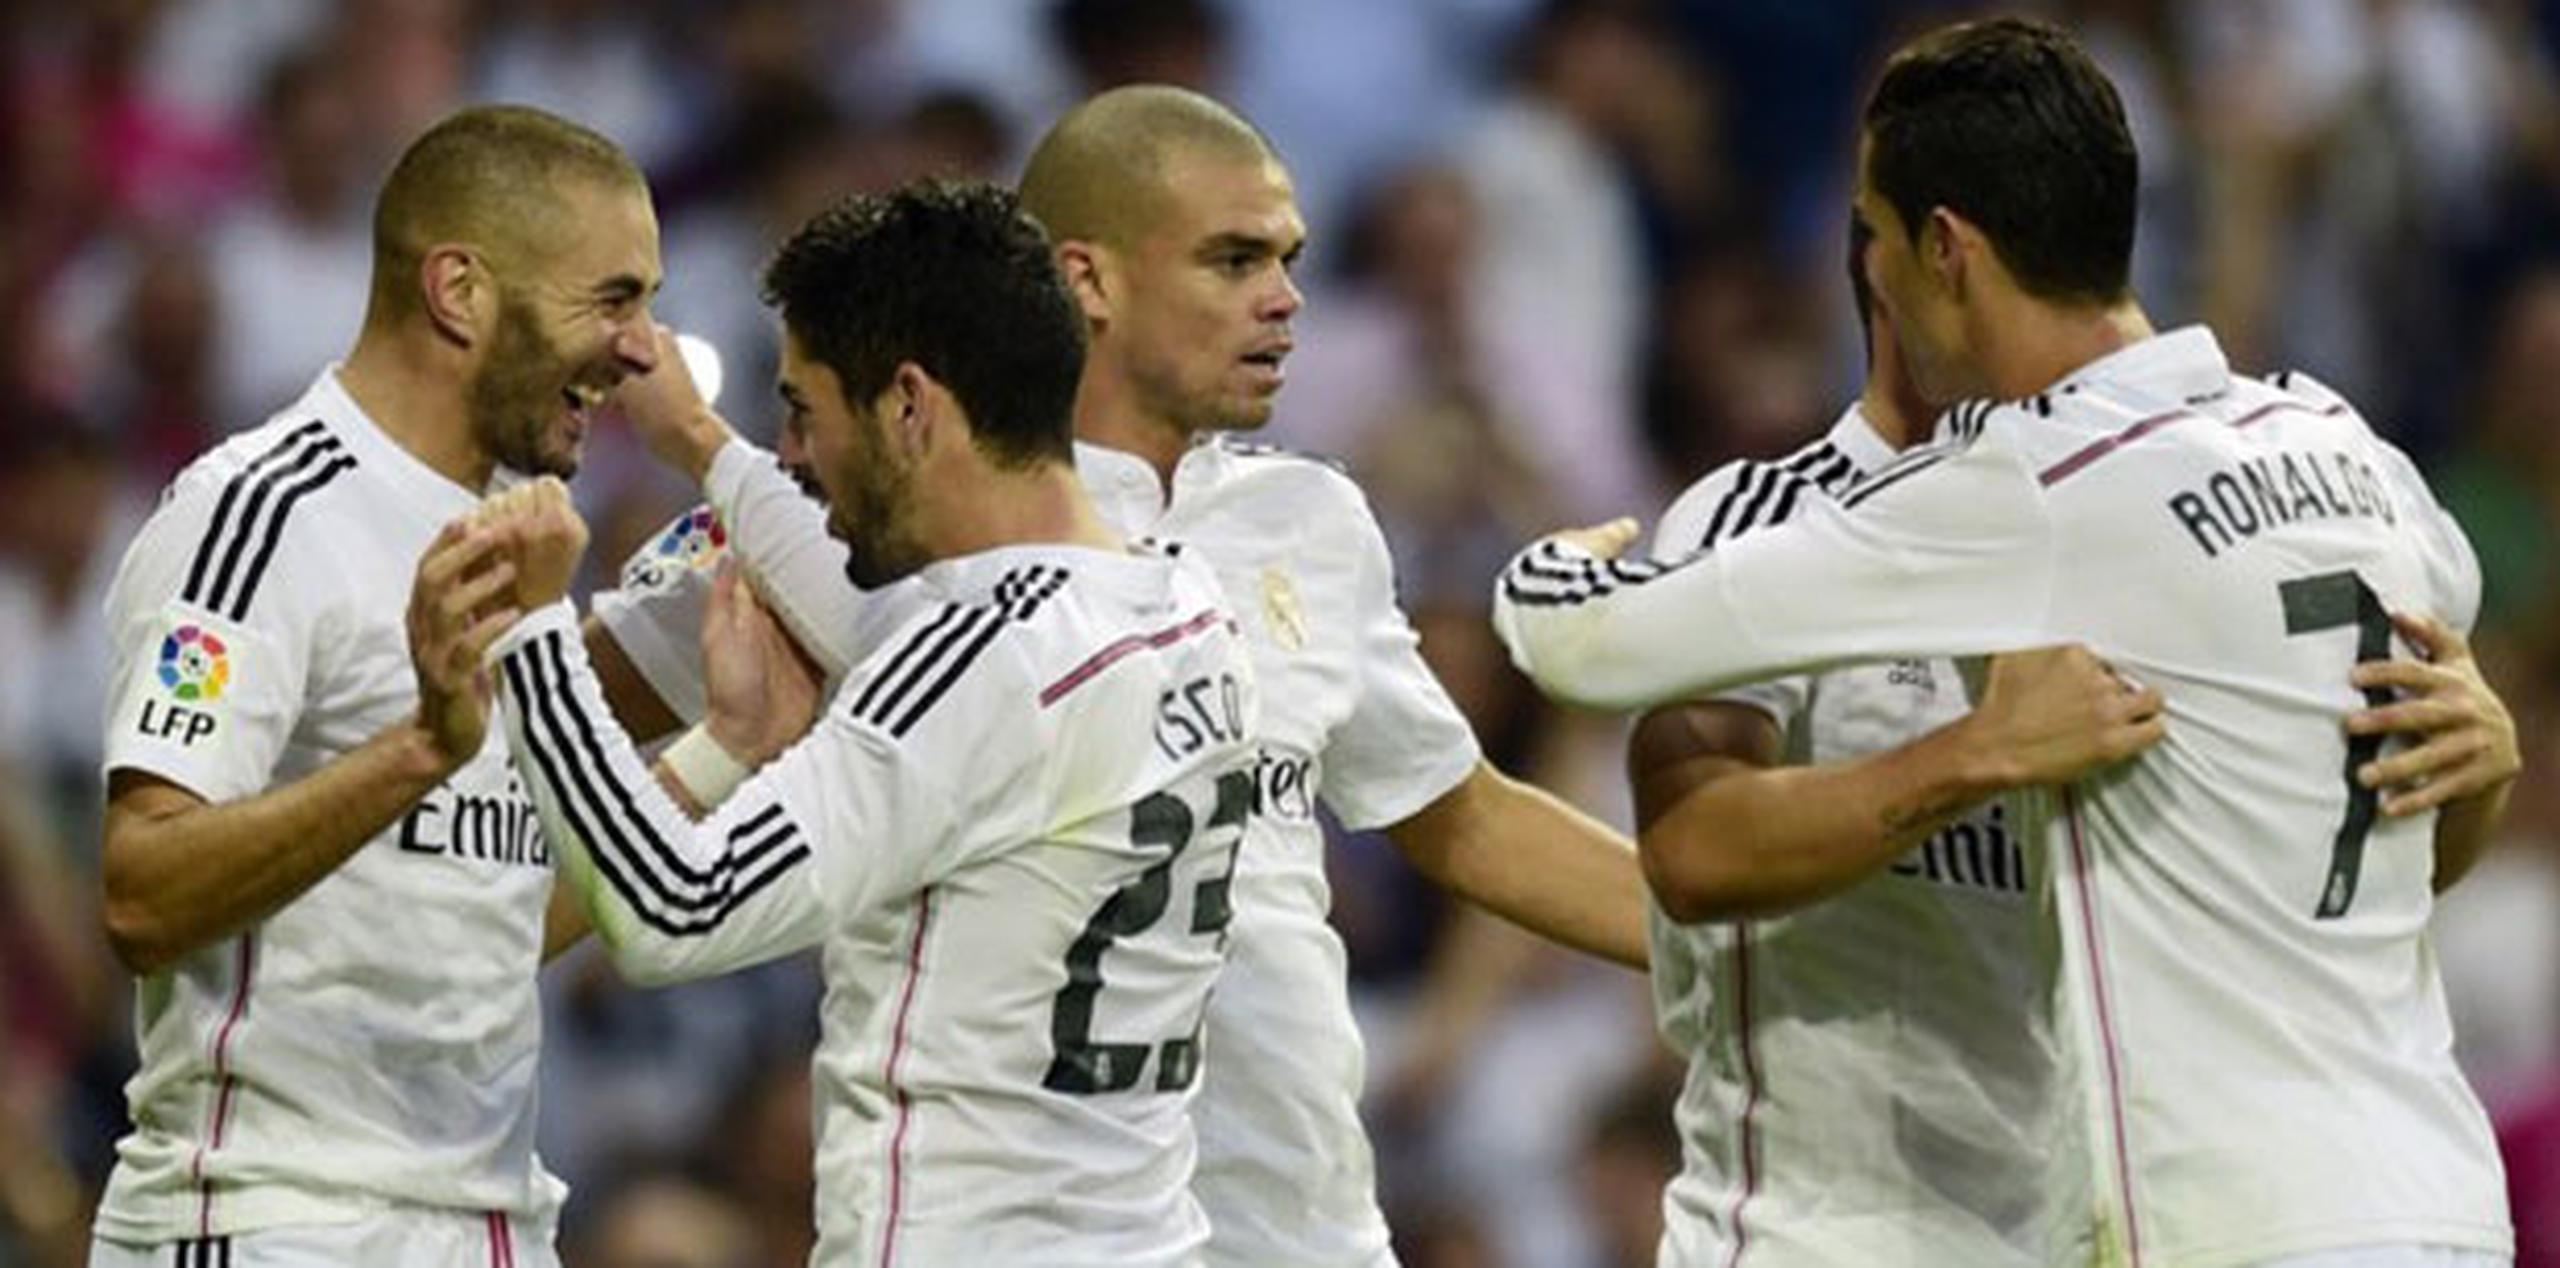 El Madrid respondió con rabia al tanto encajado y se lanzó al abordaje del arco defendido por Bravo. (AP)